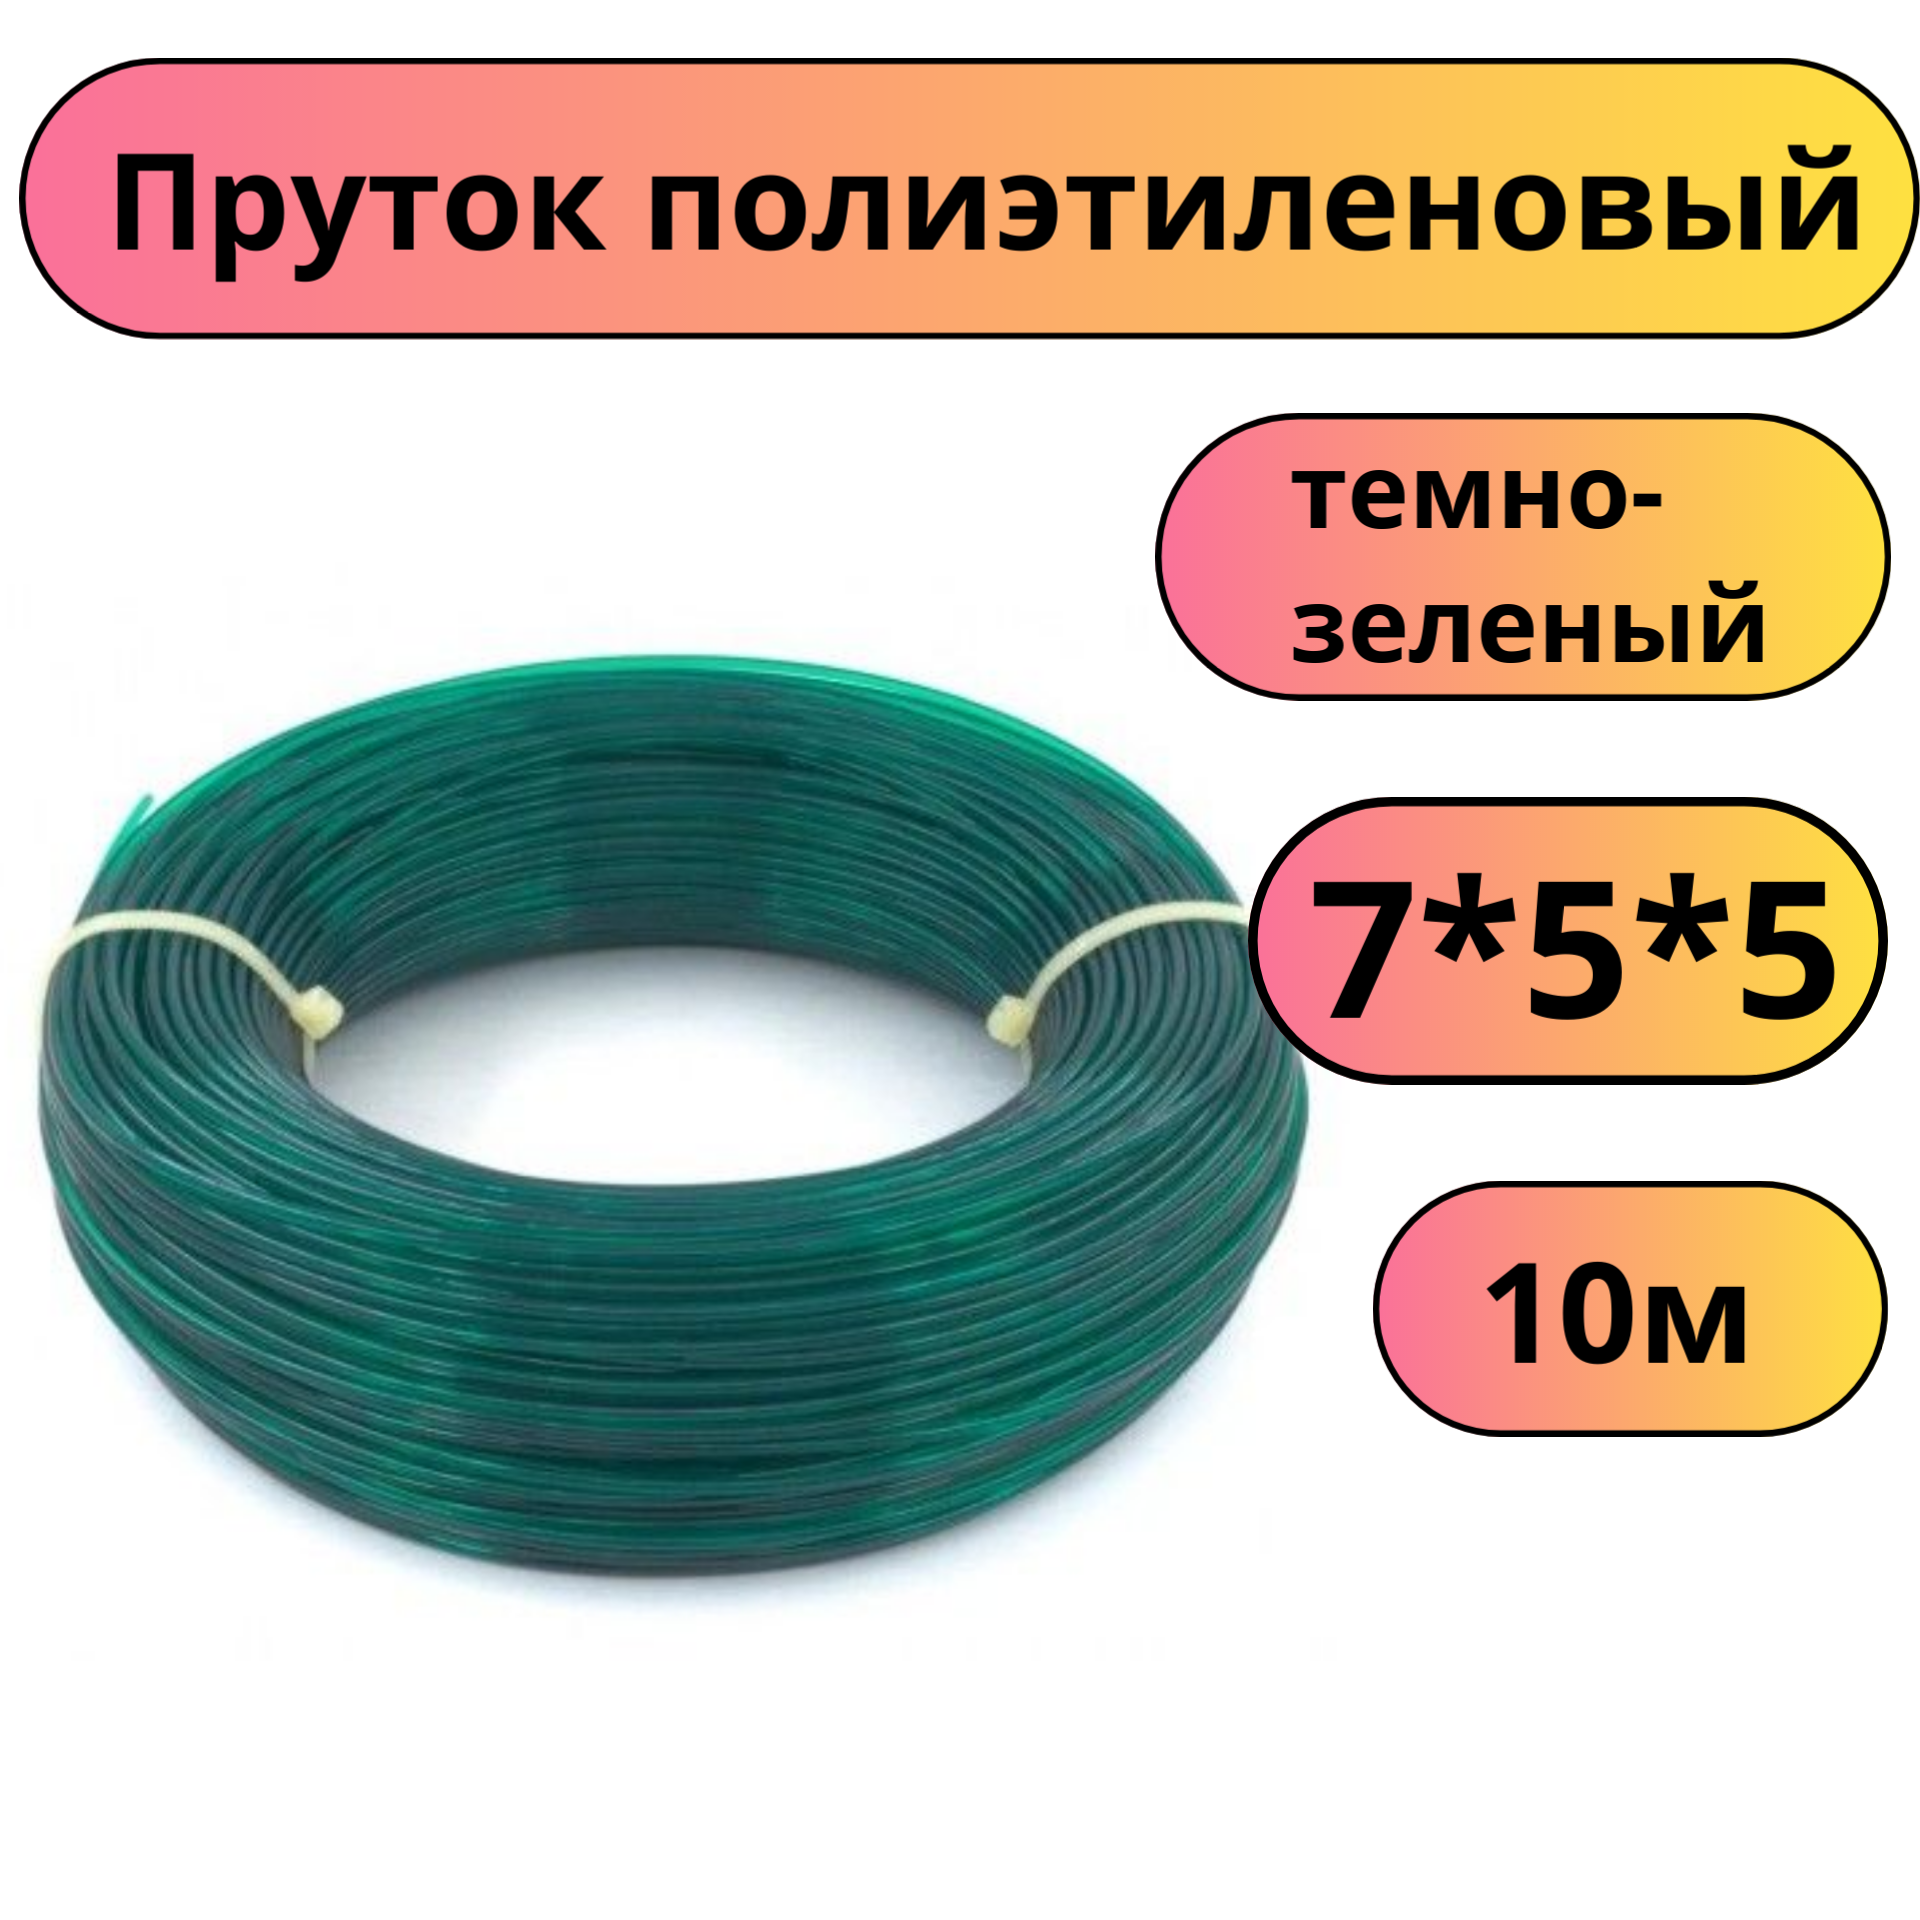 Пруток присадочный для сварки ПНД диаметр 4 длина 10 м зеленый круглый